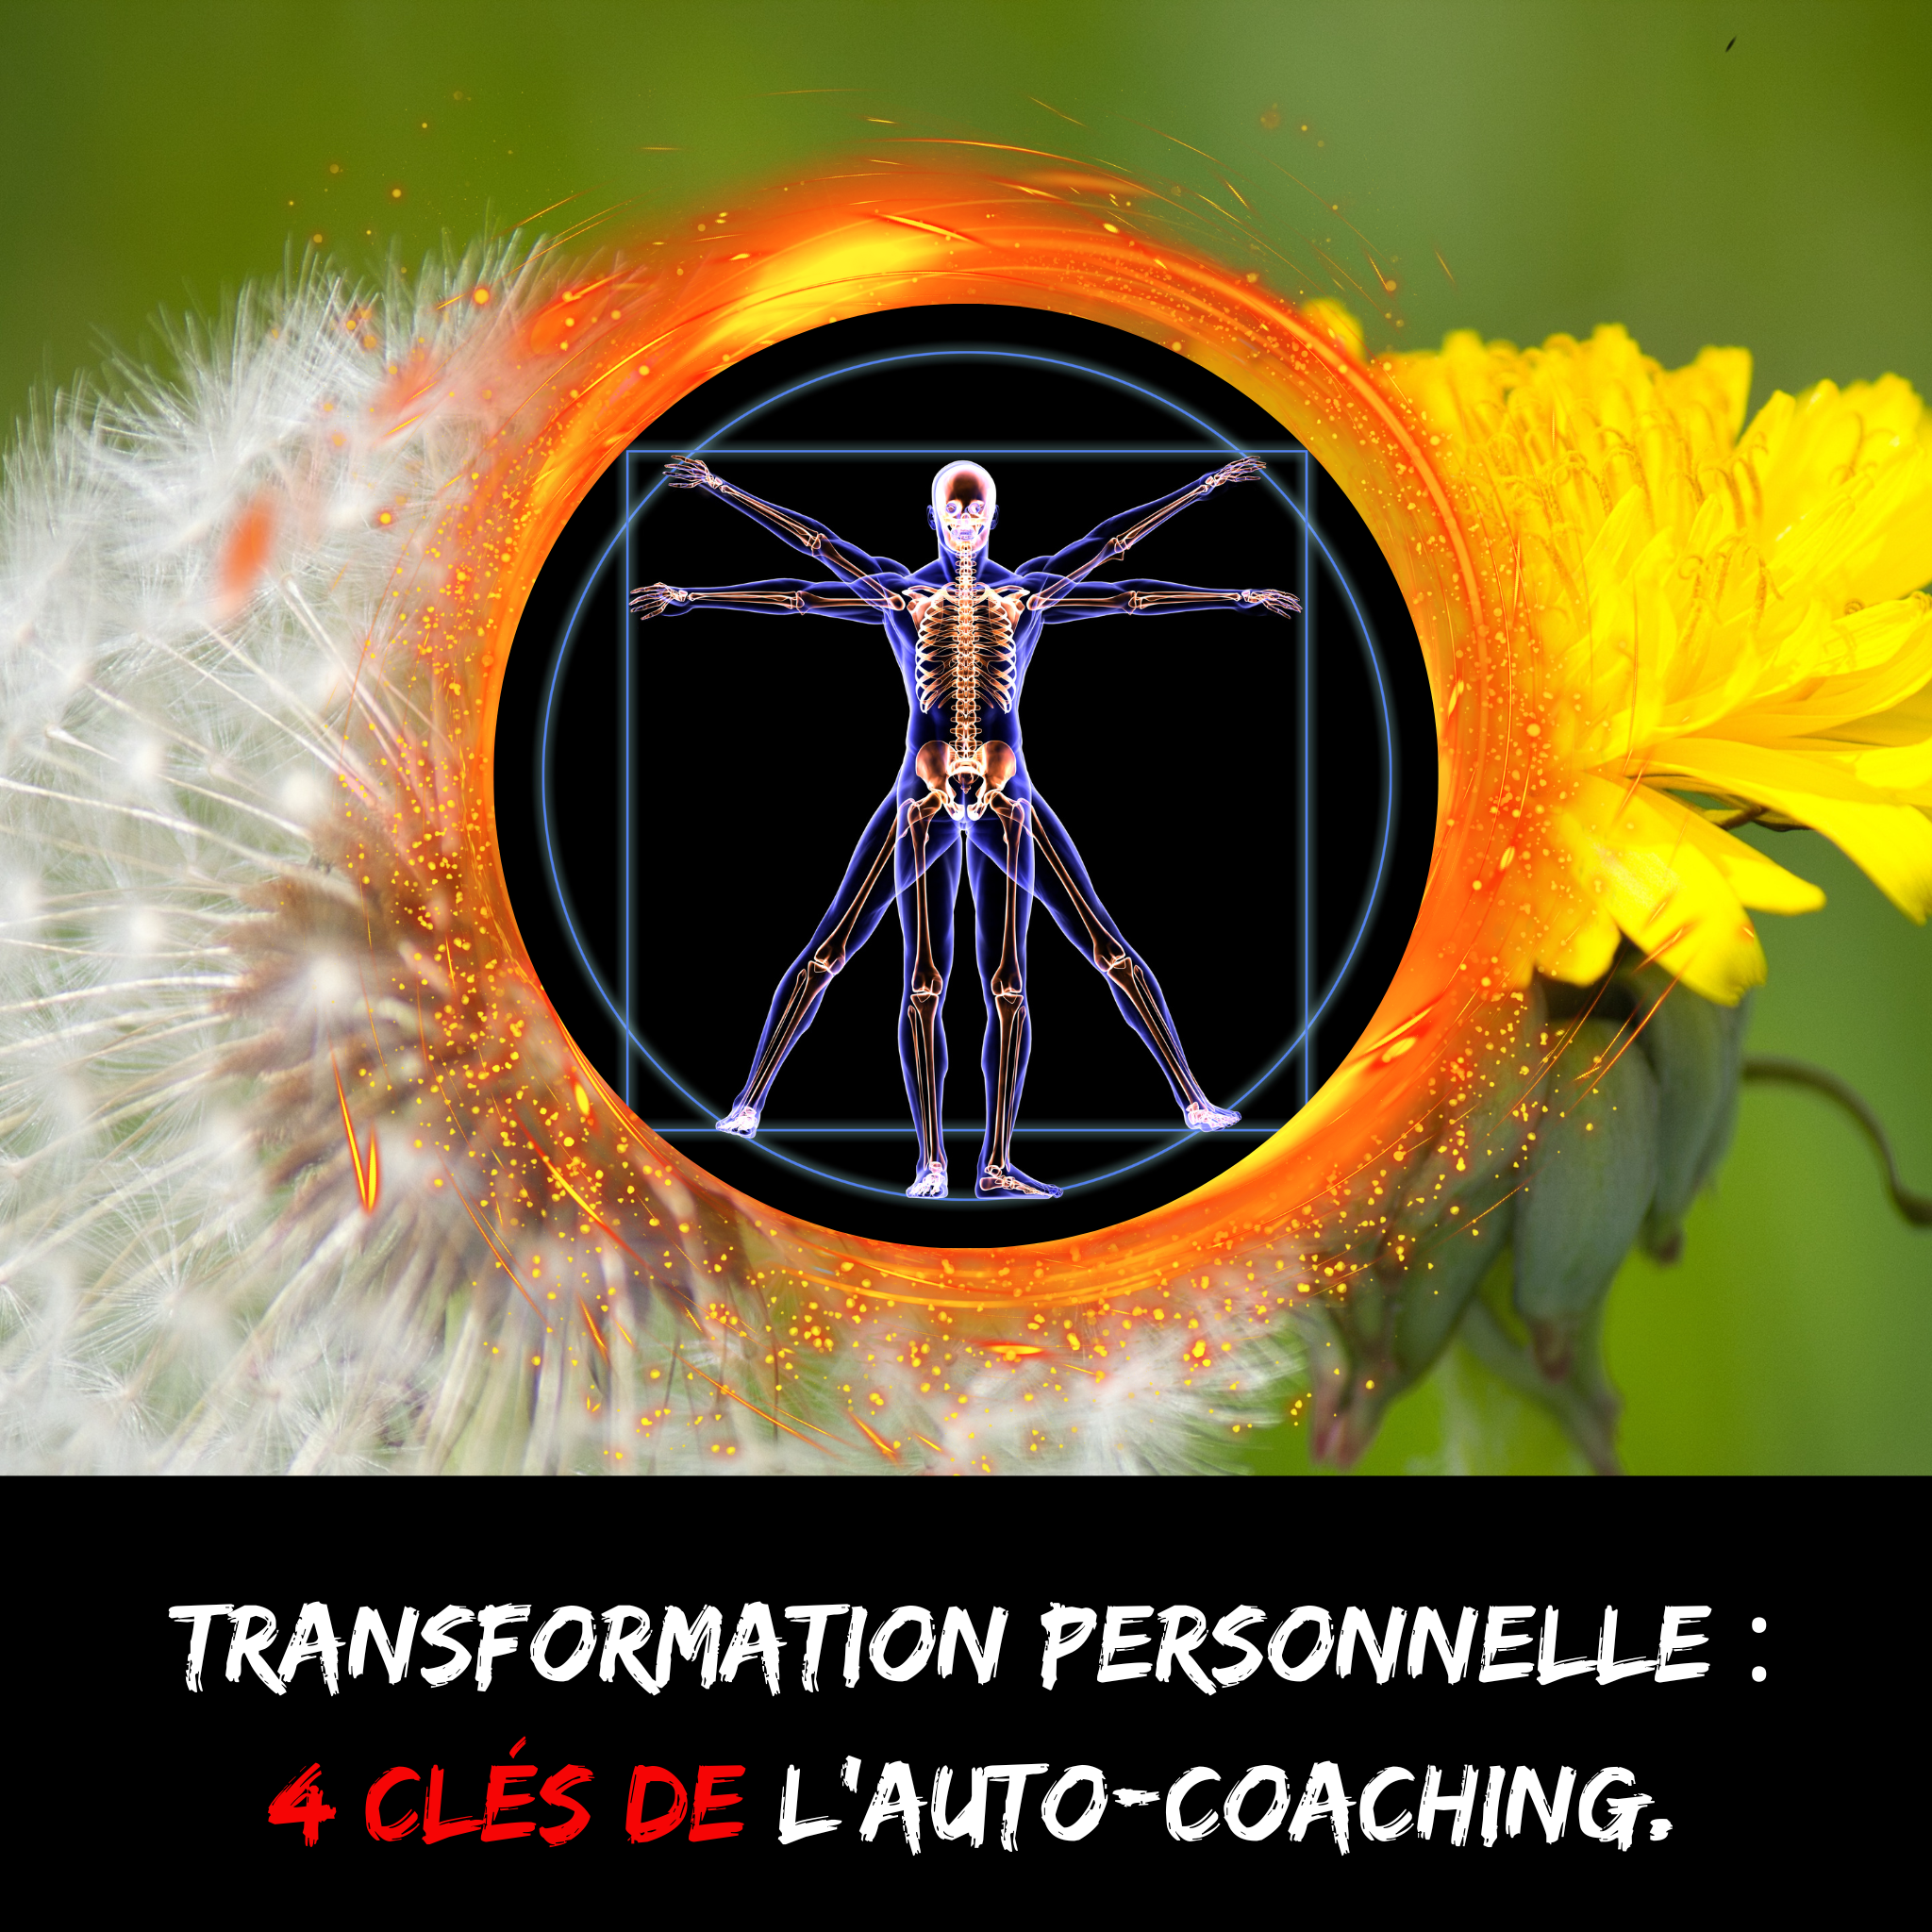 Transformation personnelle : 4 clés de l’auto-coaching.